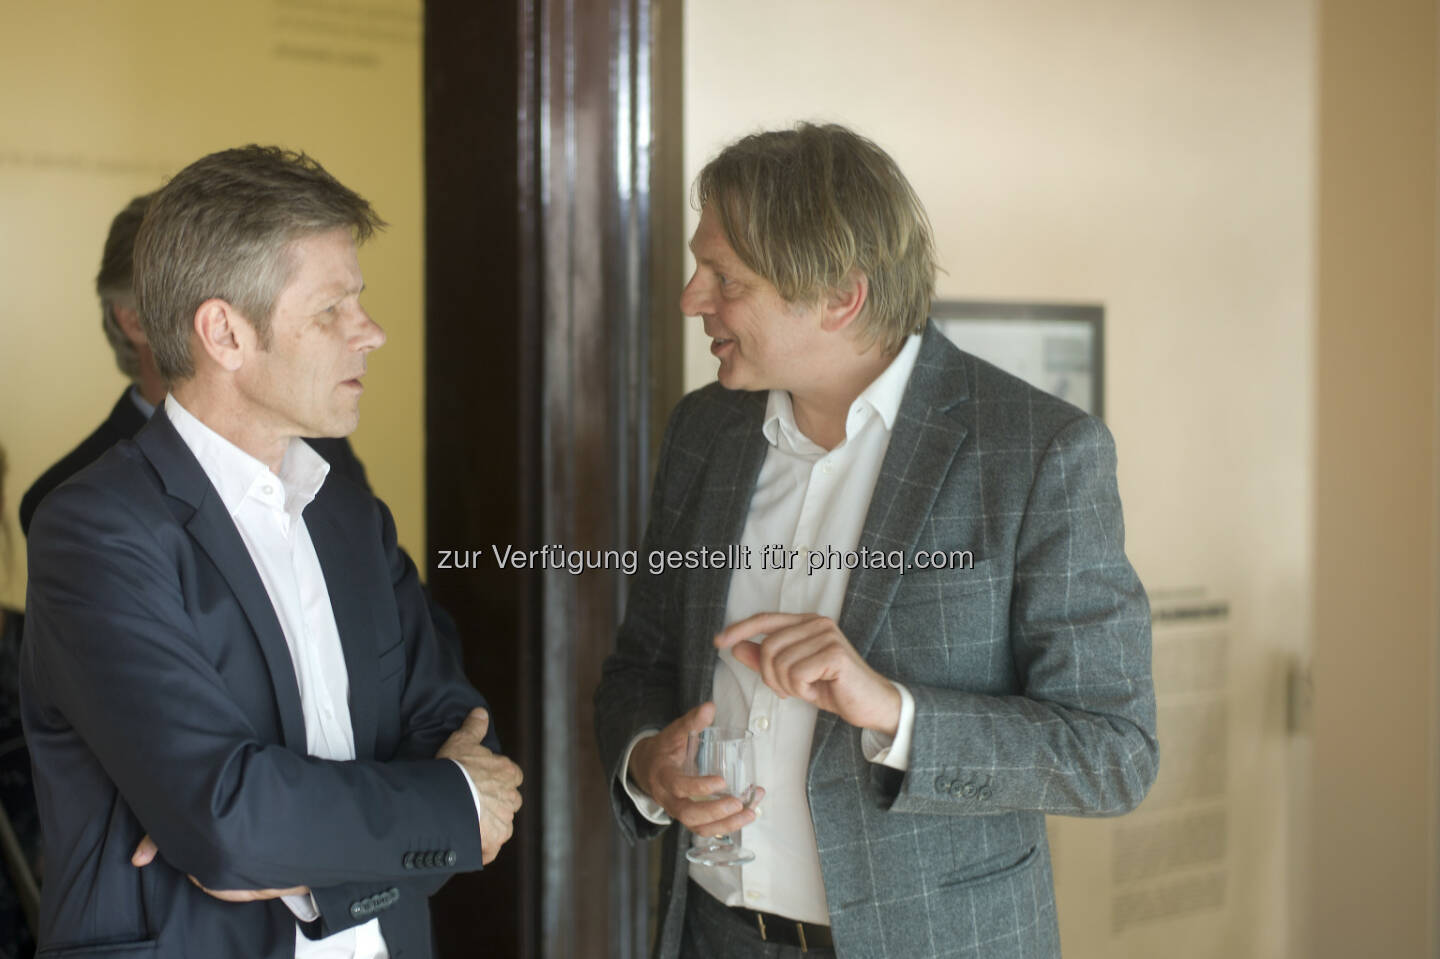  Kulturminister Josef Ostermayer besucht Architekten Johannes Baar-Baarenfels auf der Biennale in Venedig. (C): Baar-Baarenfels Architekten/Oskar Schmidt 
